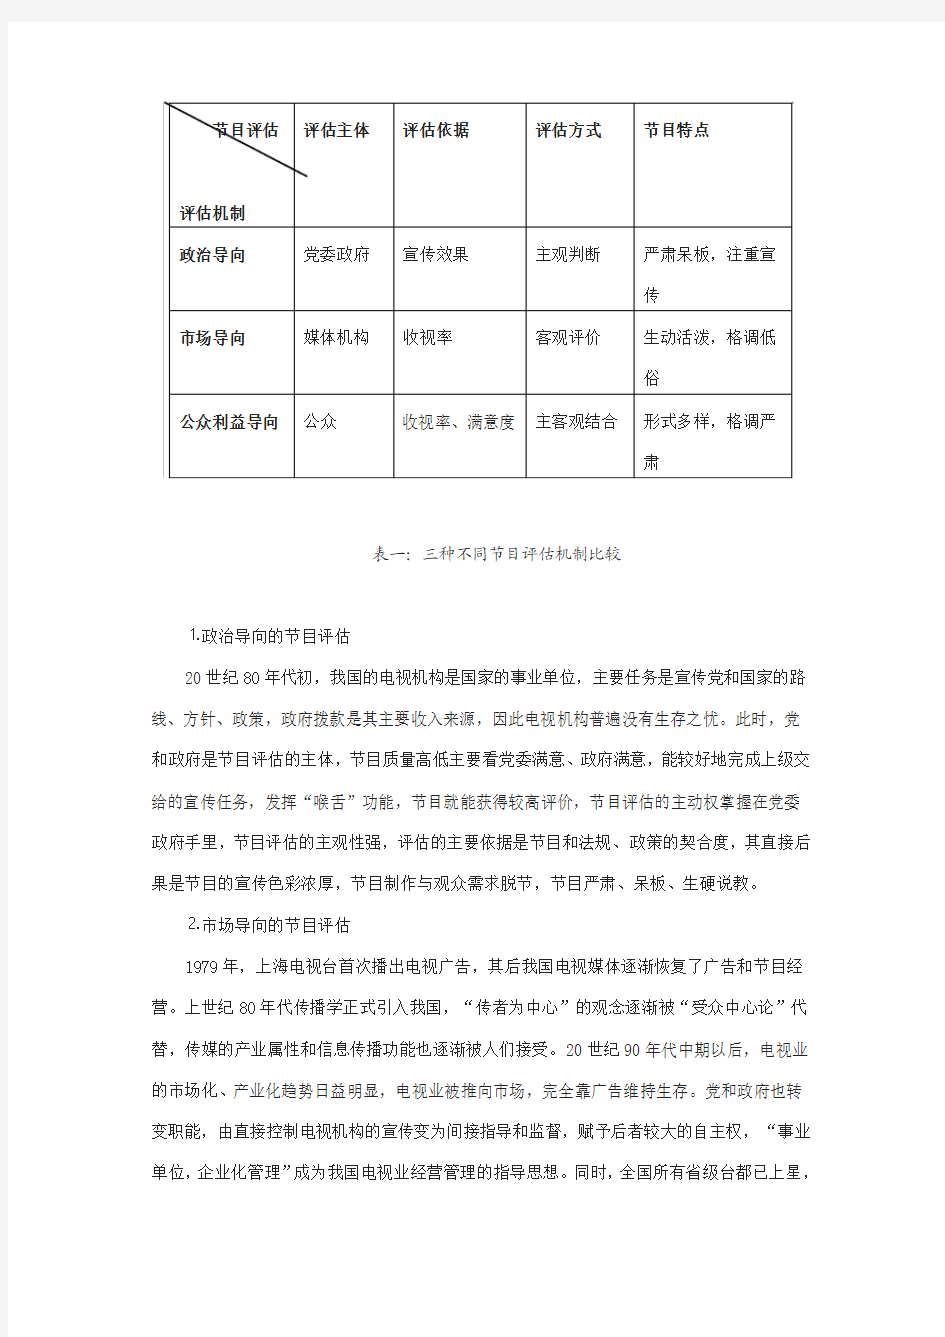 中国电视节目评估机制的现状及改革设想